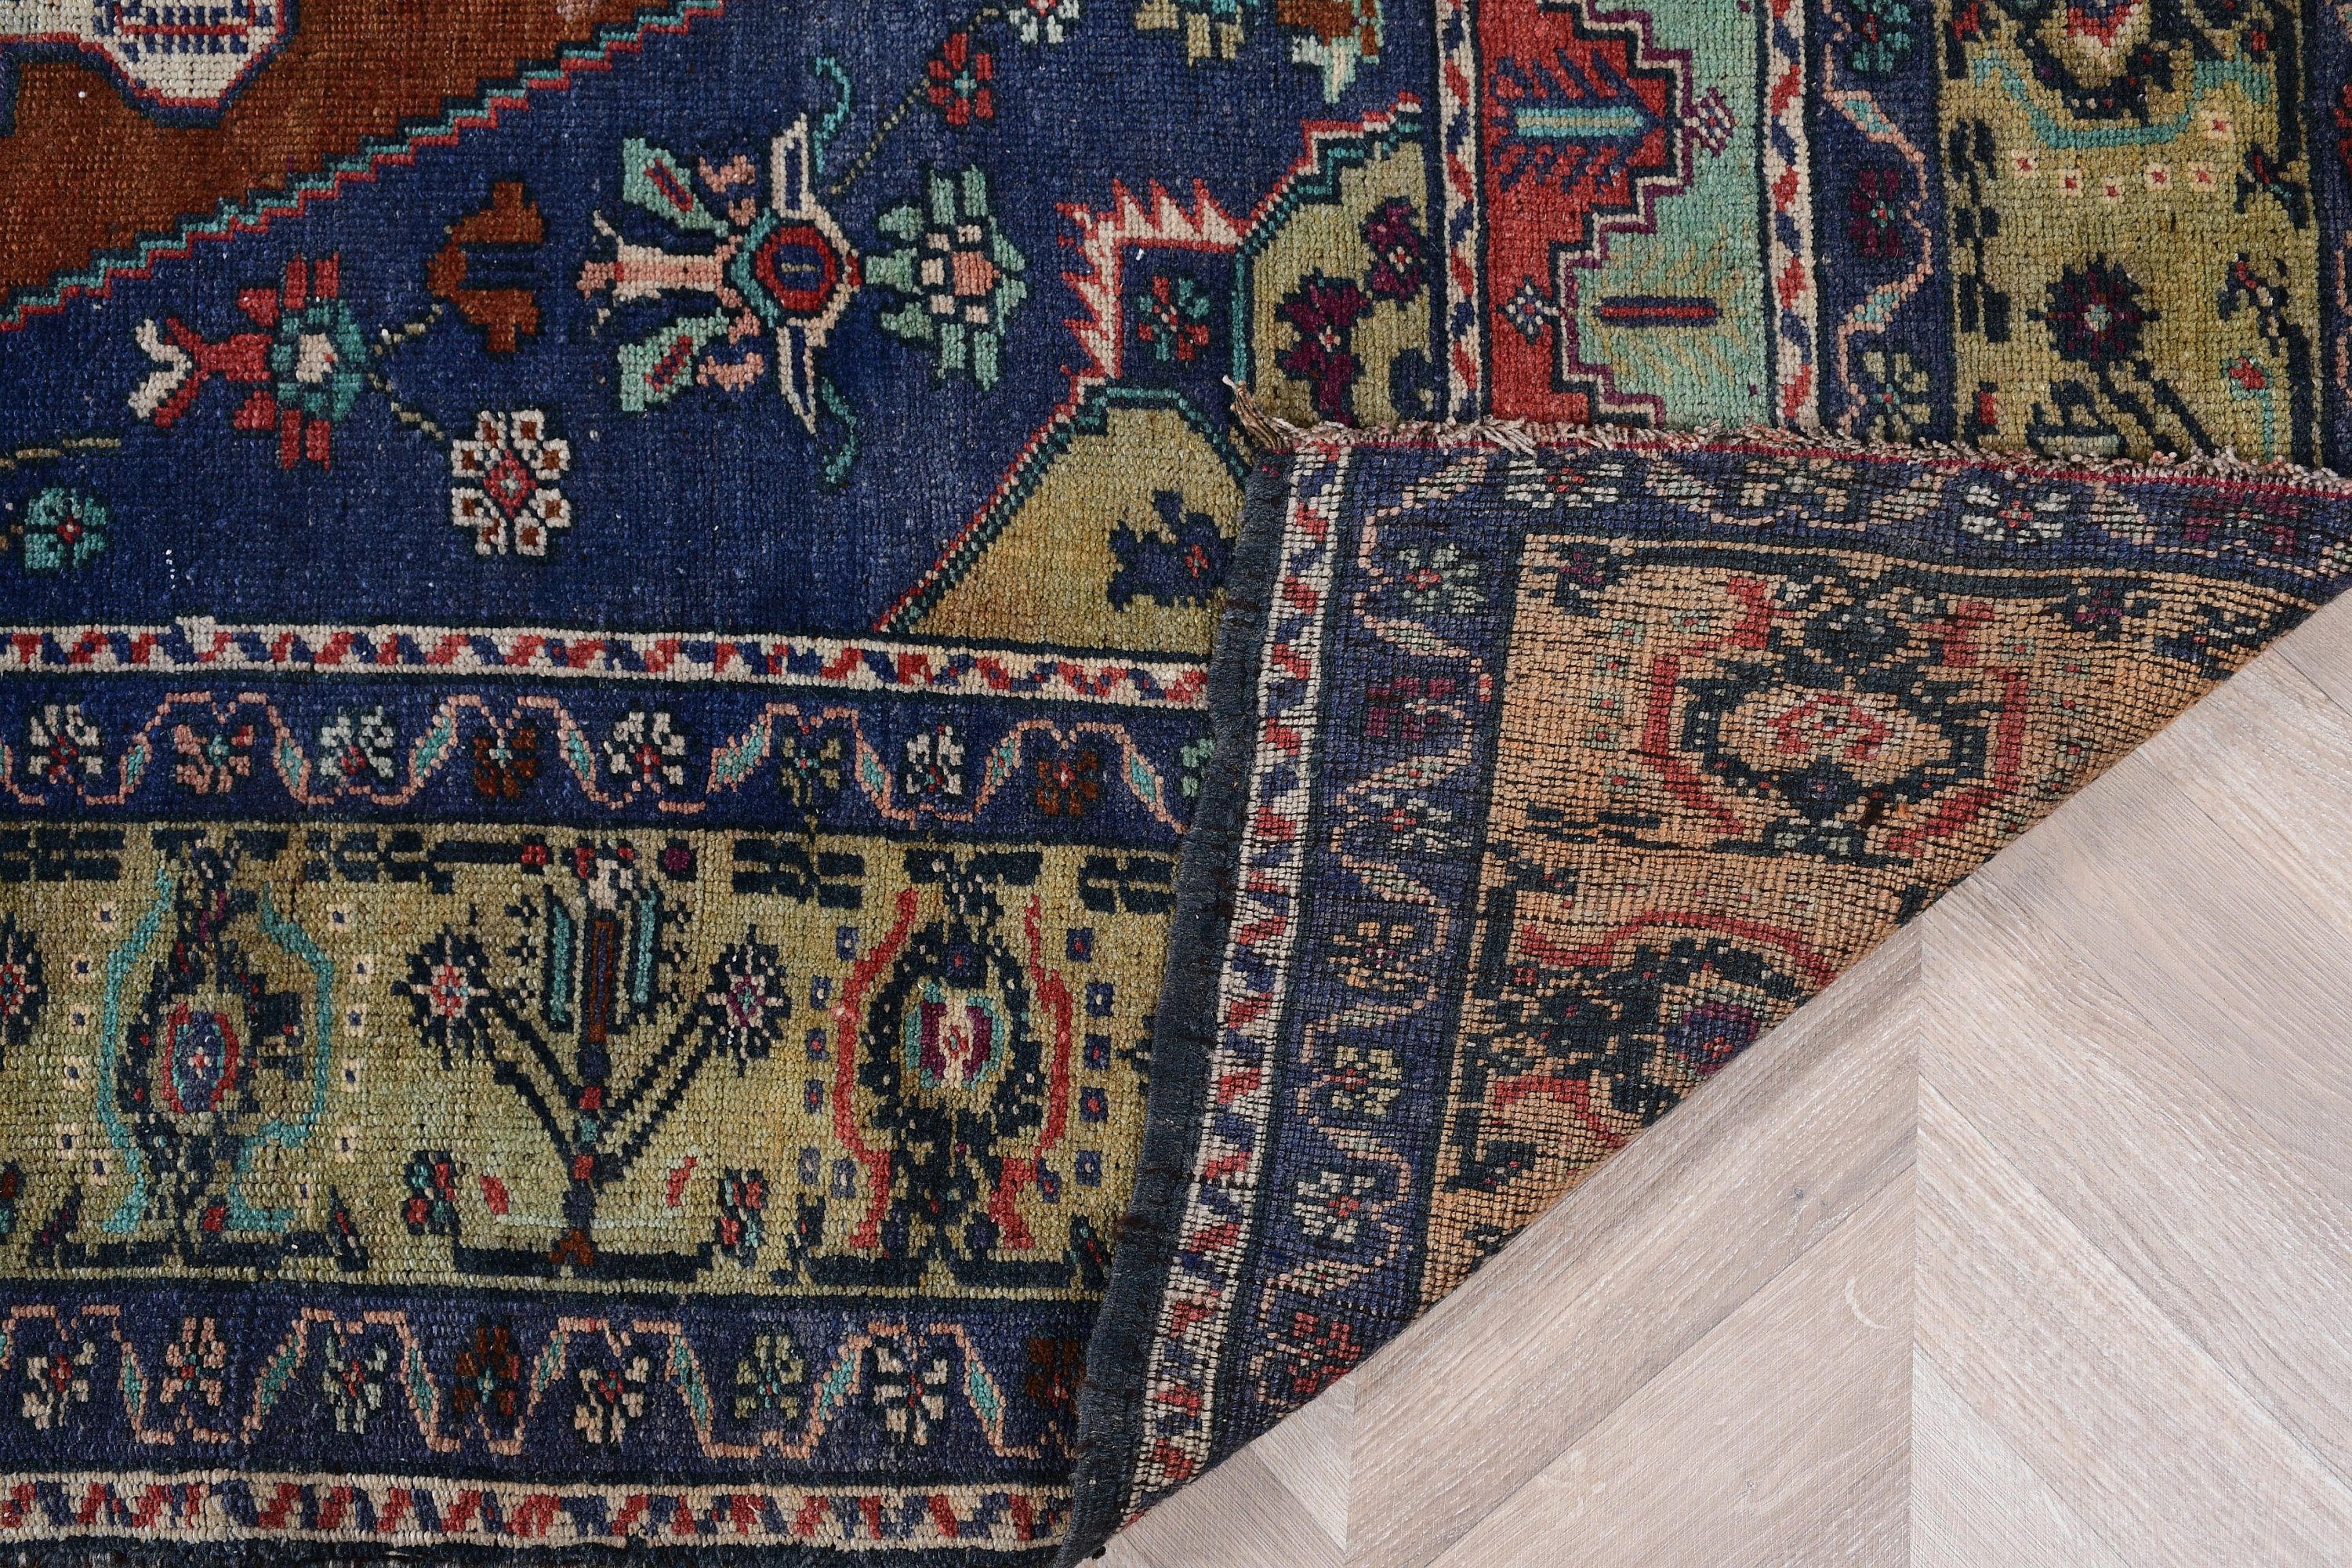 Turkish Rug, Blue Moroccan Rug, Living Room Rug, Floor Rugs, Salon Rug, Vintage Rug, Antique Rug, 5.2x8.2 ft Large Rug, Rugs for Salon